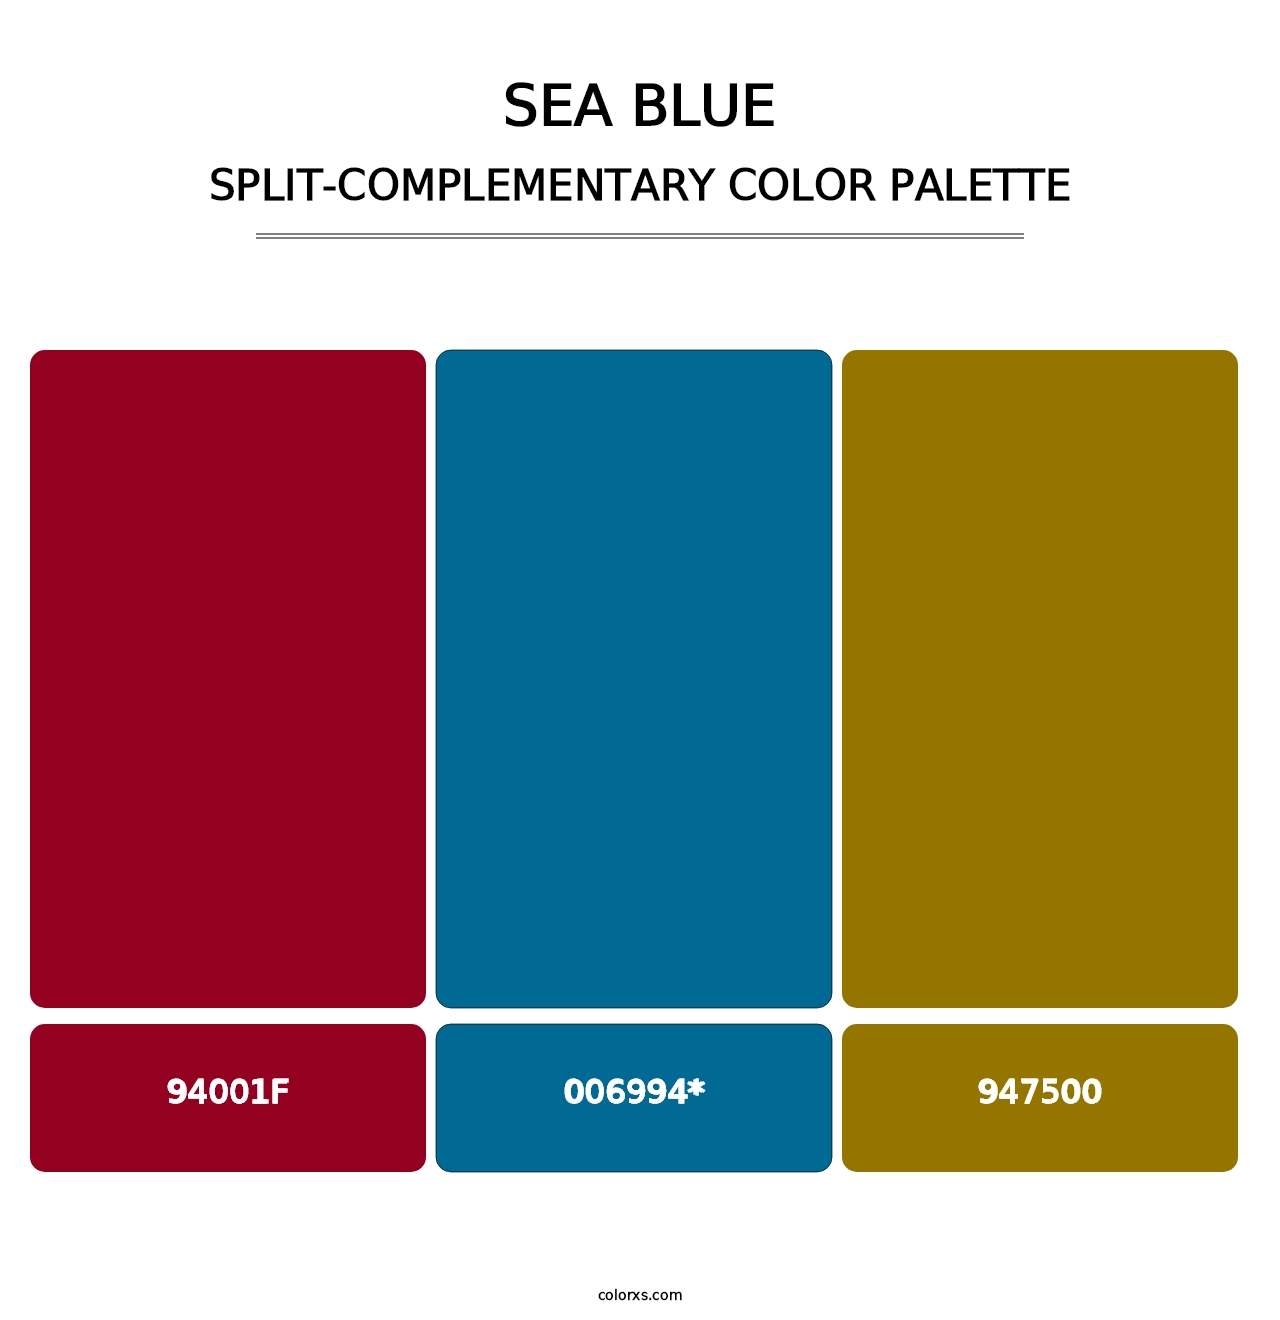 Sea Blue - Split-Complementary Color Palette